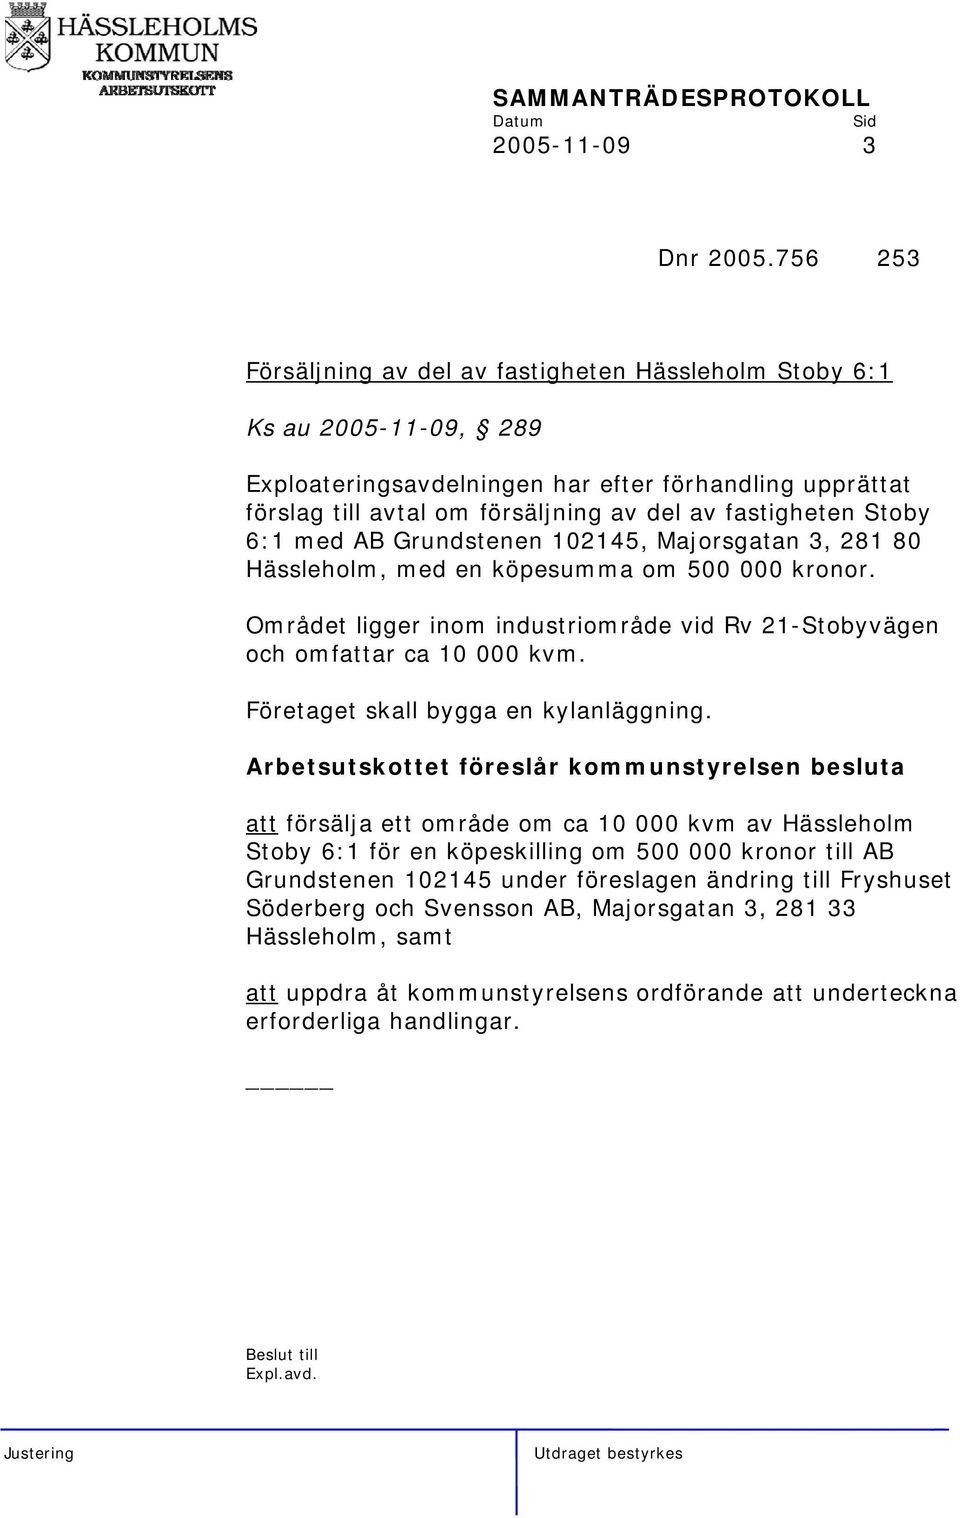 Stoby 6:1 med AB Grundstenen 102145, Majorsgatan 3, 281 80 Hässleholm, med en köpesumma om 500 000 kronor. Området ligger inom industriområde vid Rv 21-Stobyvägen och omfattar ca 10 000 kvm.